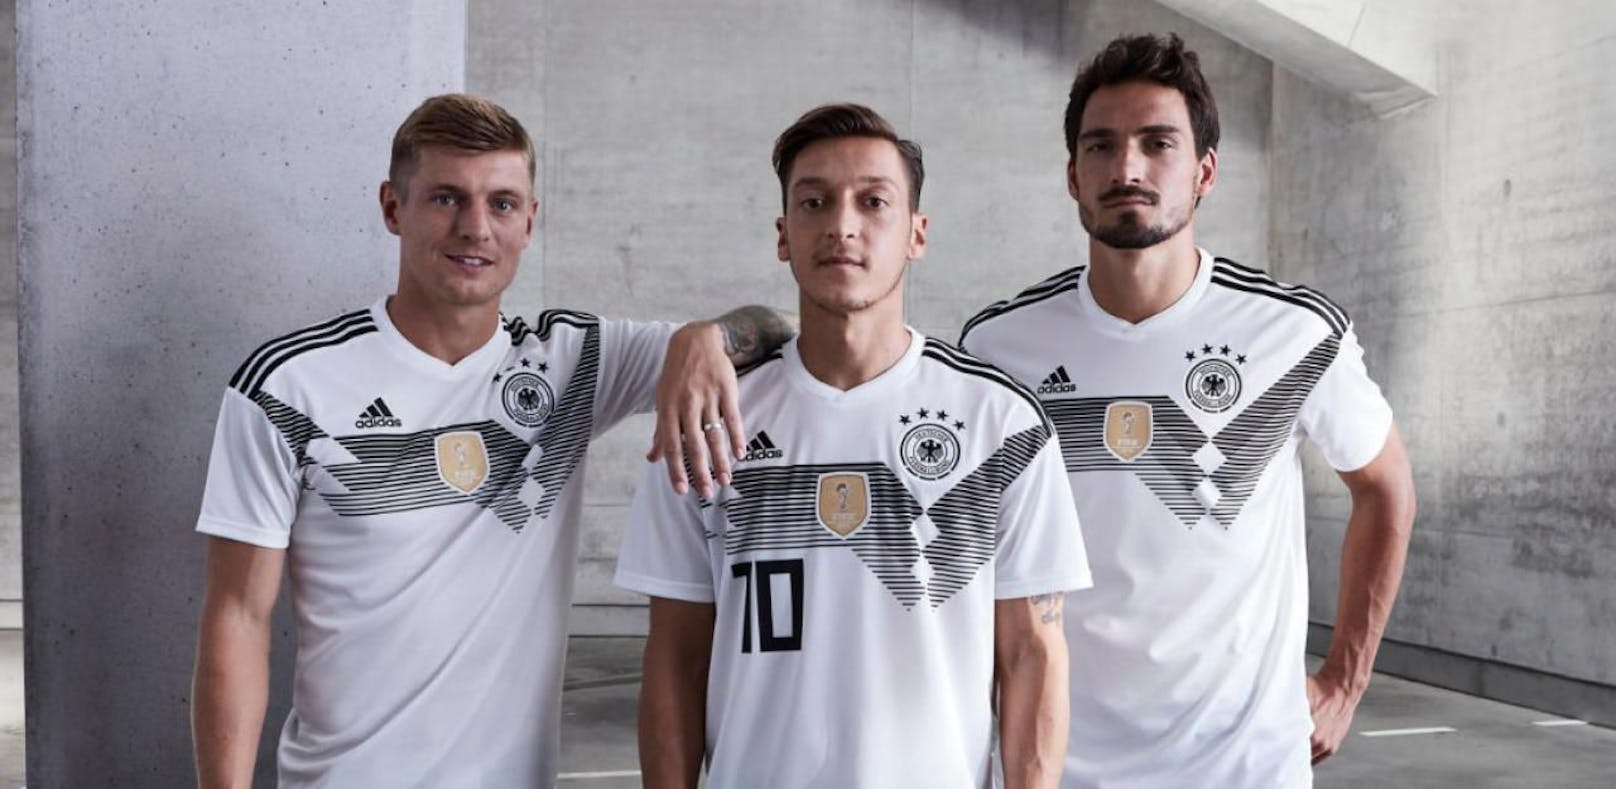 Stolze 145 € kostet ein deutsches WM-Trikot